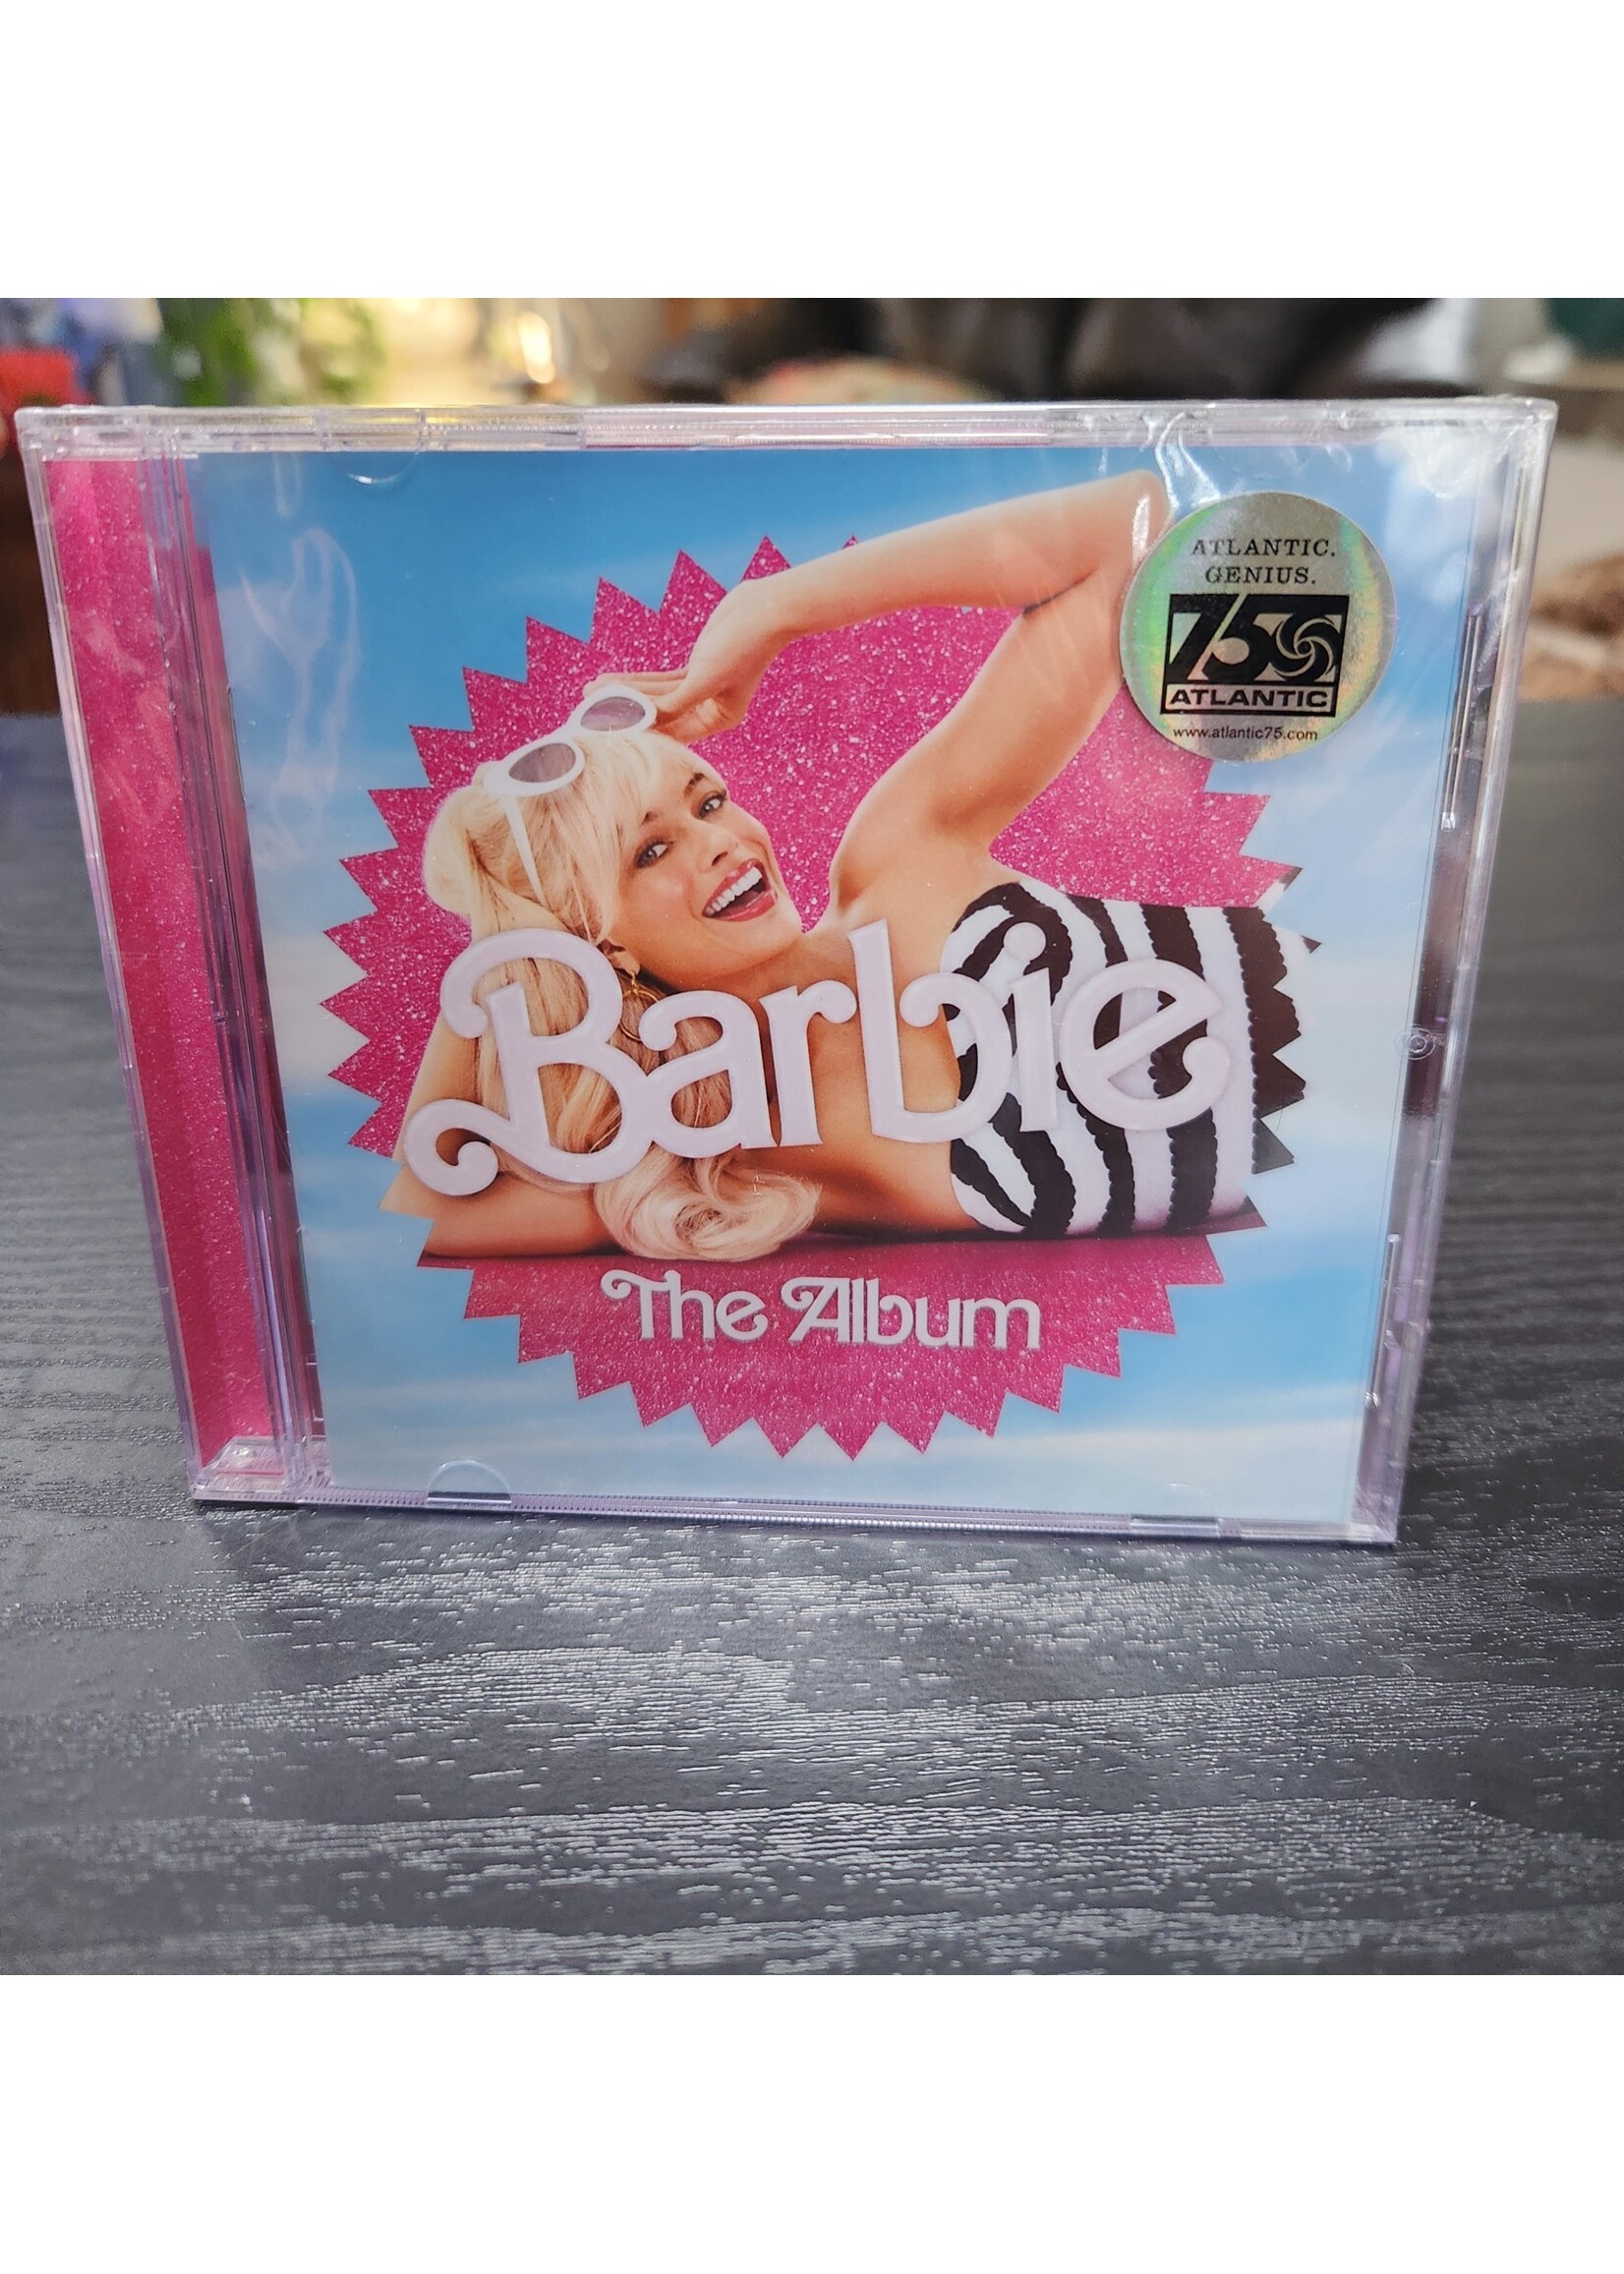 *Crack In Case* Various - Barbie: The Album CD, Barbie Movie